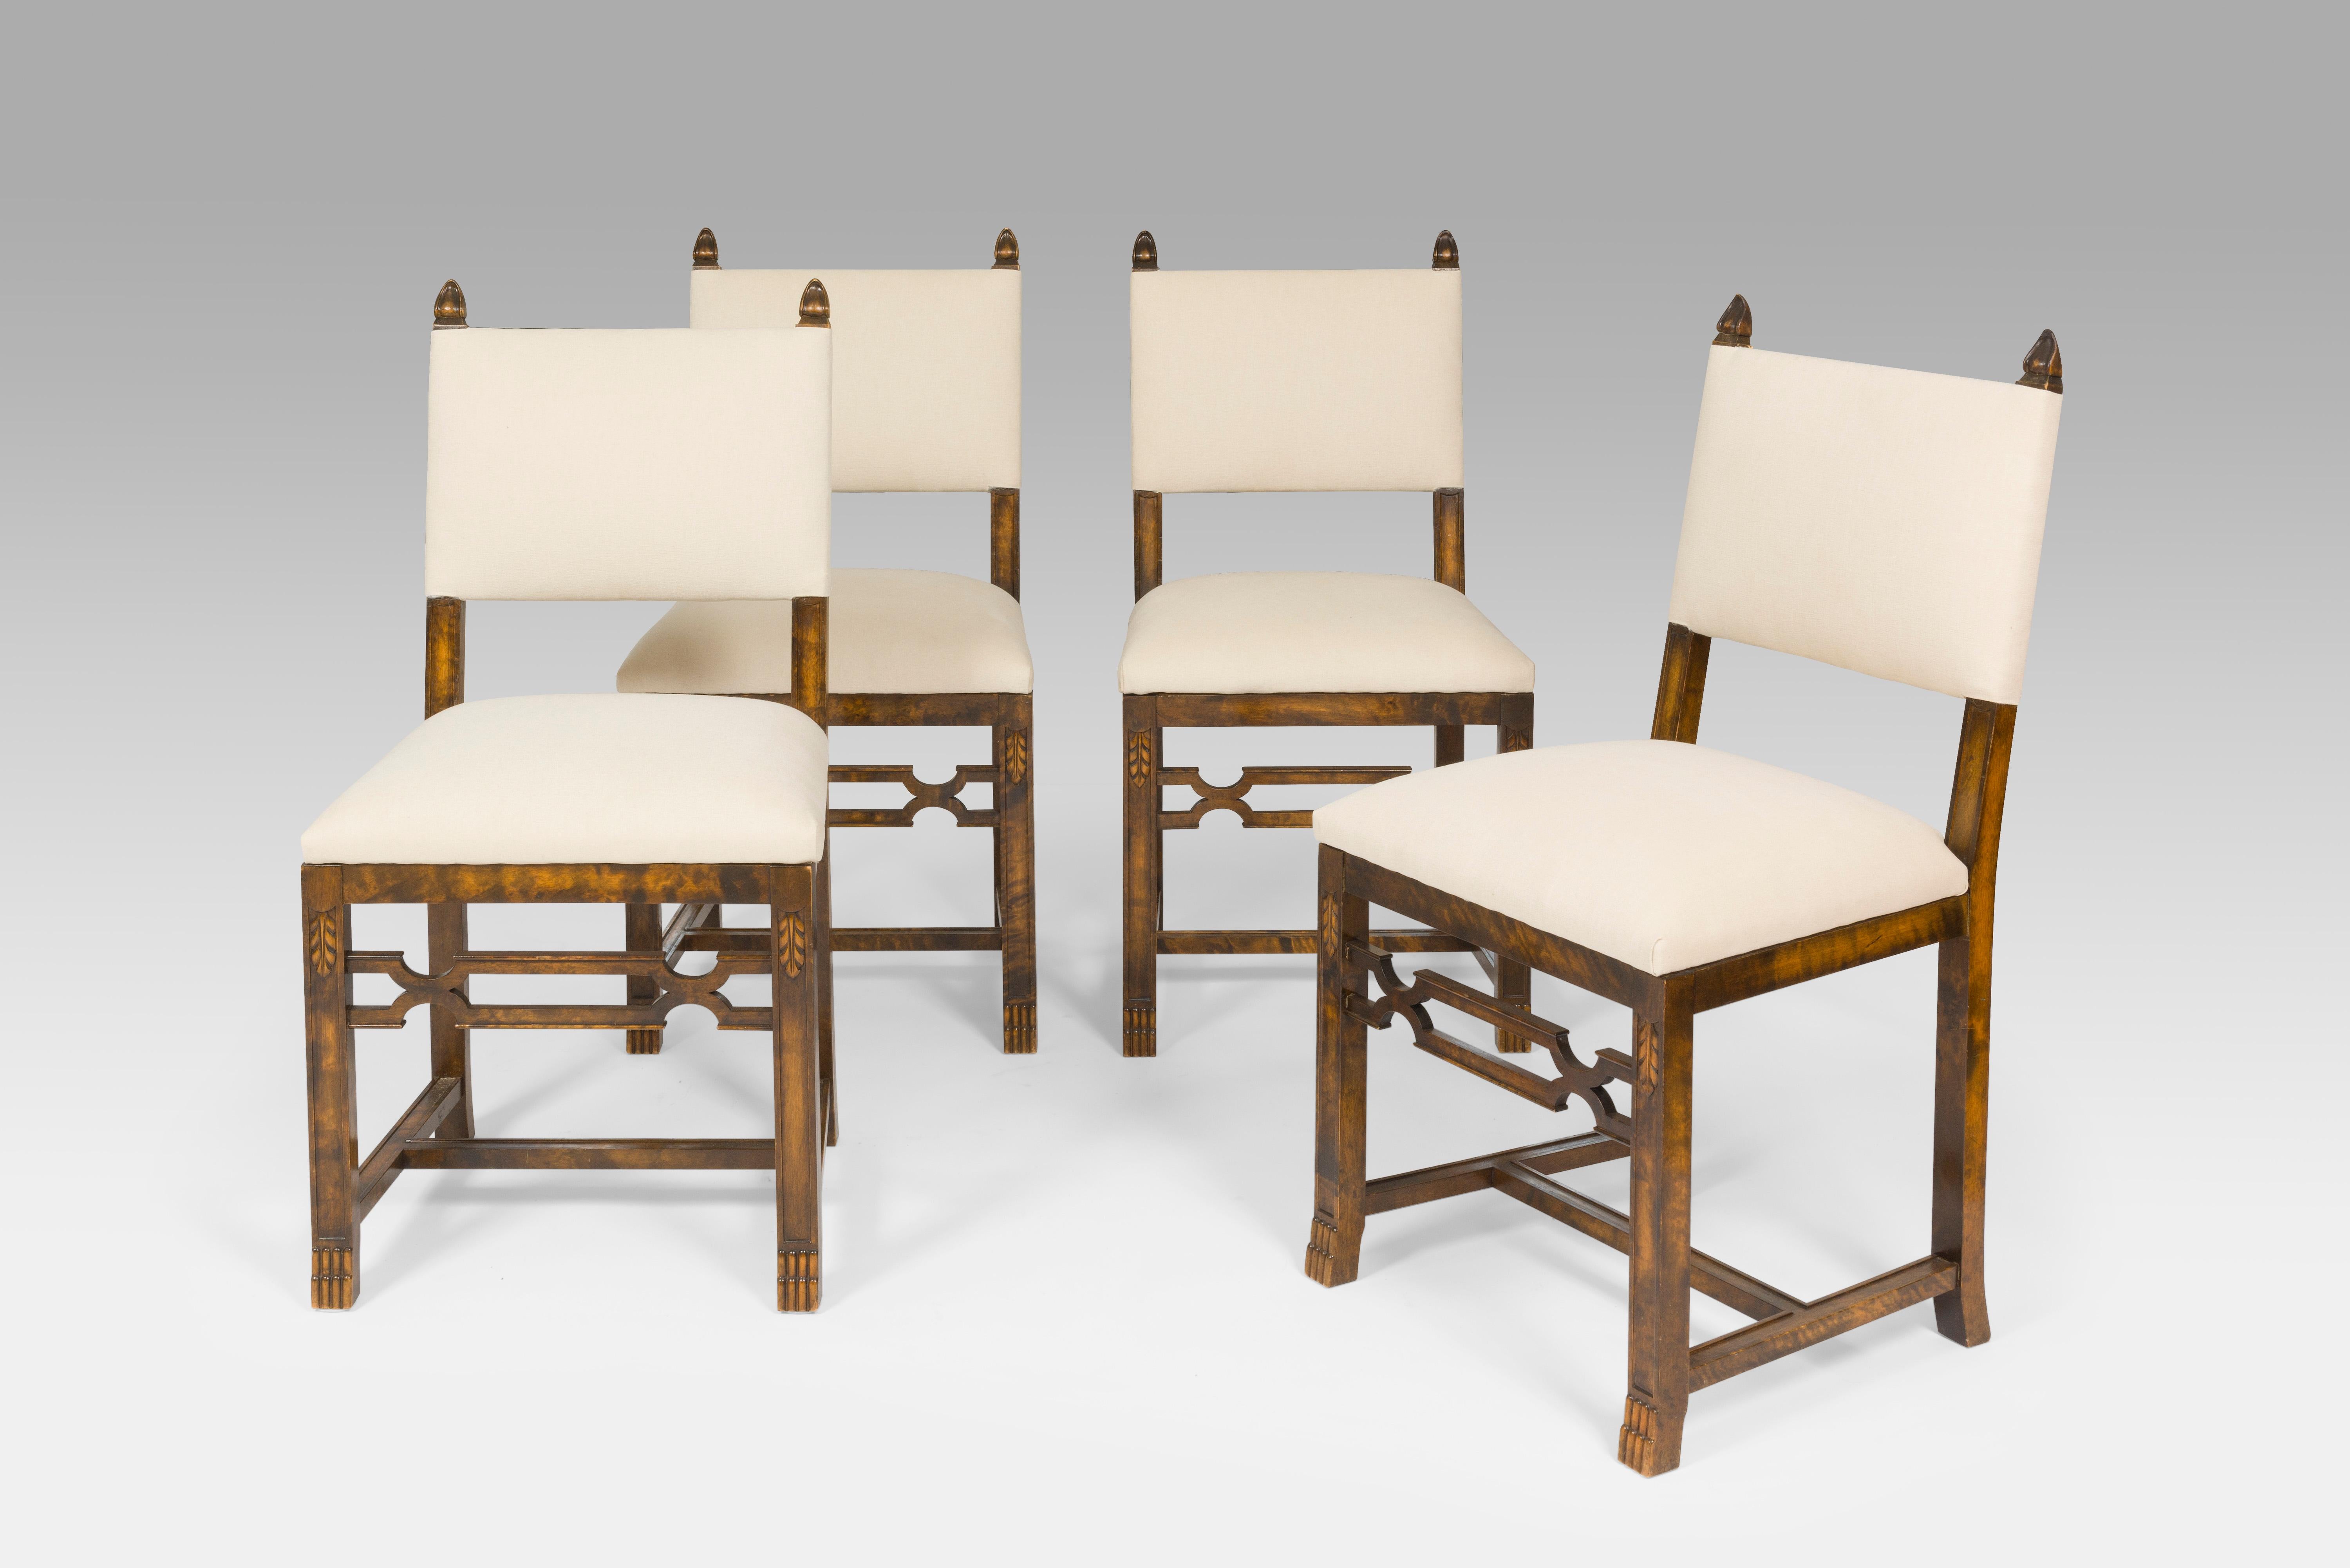 Tisch reicht von 148-260cm/58-102 Zoll
Stühle messen H91 x B42 x T42 x Sitz H45cm/ H36 x B16.5 x T16.5 x Sitz H18 Zoll.

Axel Einar Hjorth war ein wegweisender schwedischer Designer, dessen Entwürfe die Designwelt bis heute prägen. Hjorth war in der